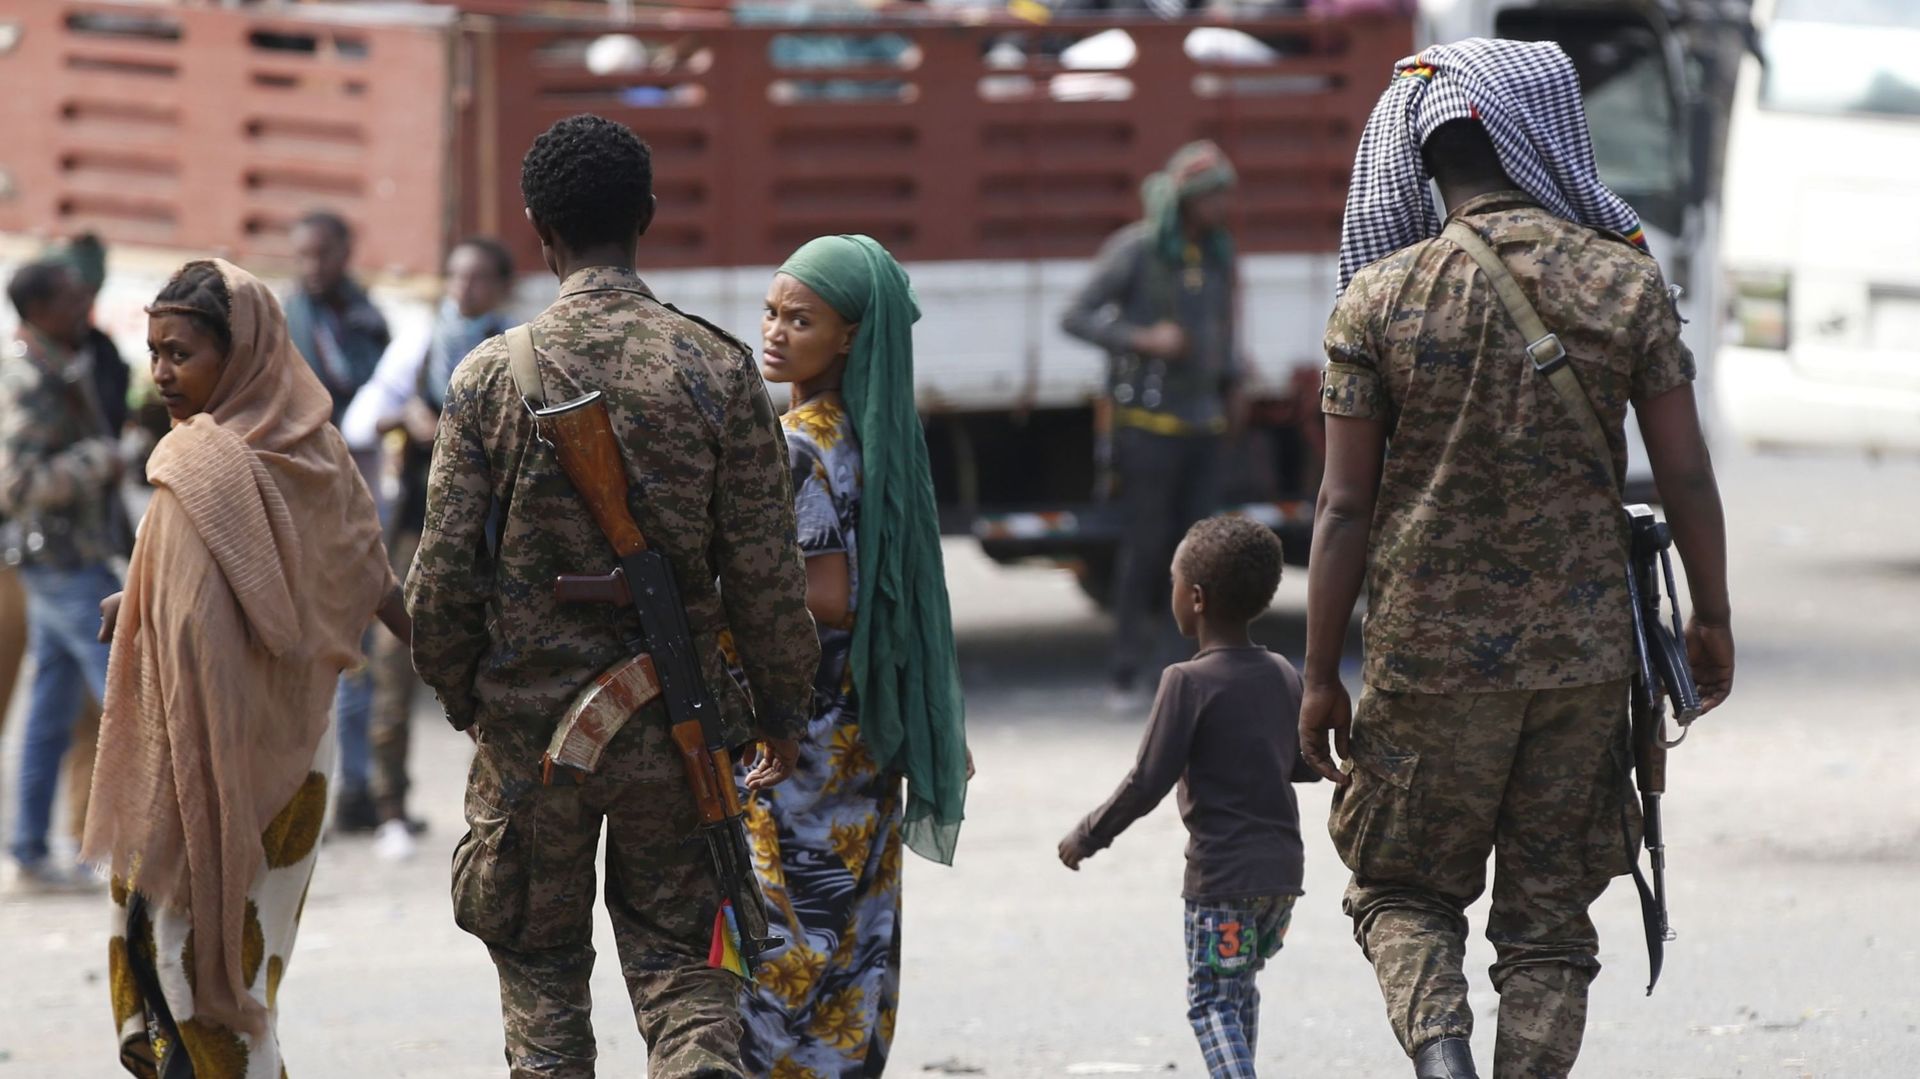 Image d'illustration - Les forces de sécurité éthiopiennes patrouillent dans la rue après que l'armée éthiopienne ait pris le contrôle de la ville de Hayk, dans la ville d'Amhara, aux mains des rebelles du Front populaire de libération du Tigré (TPLF), en